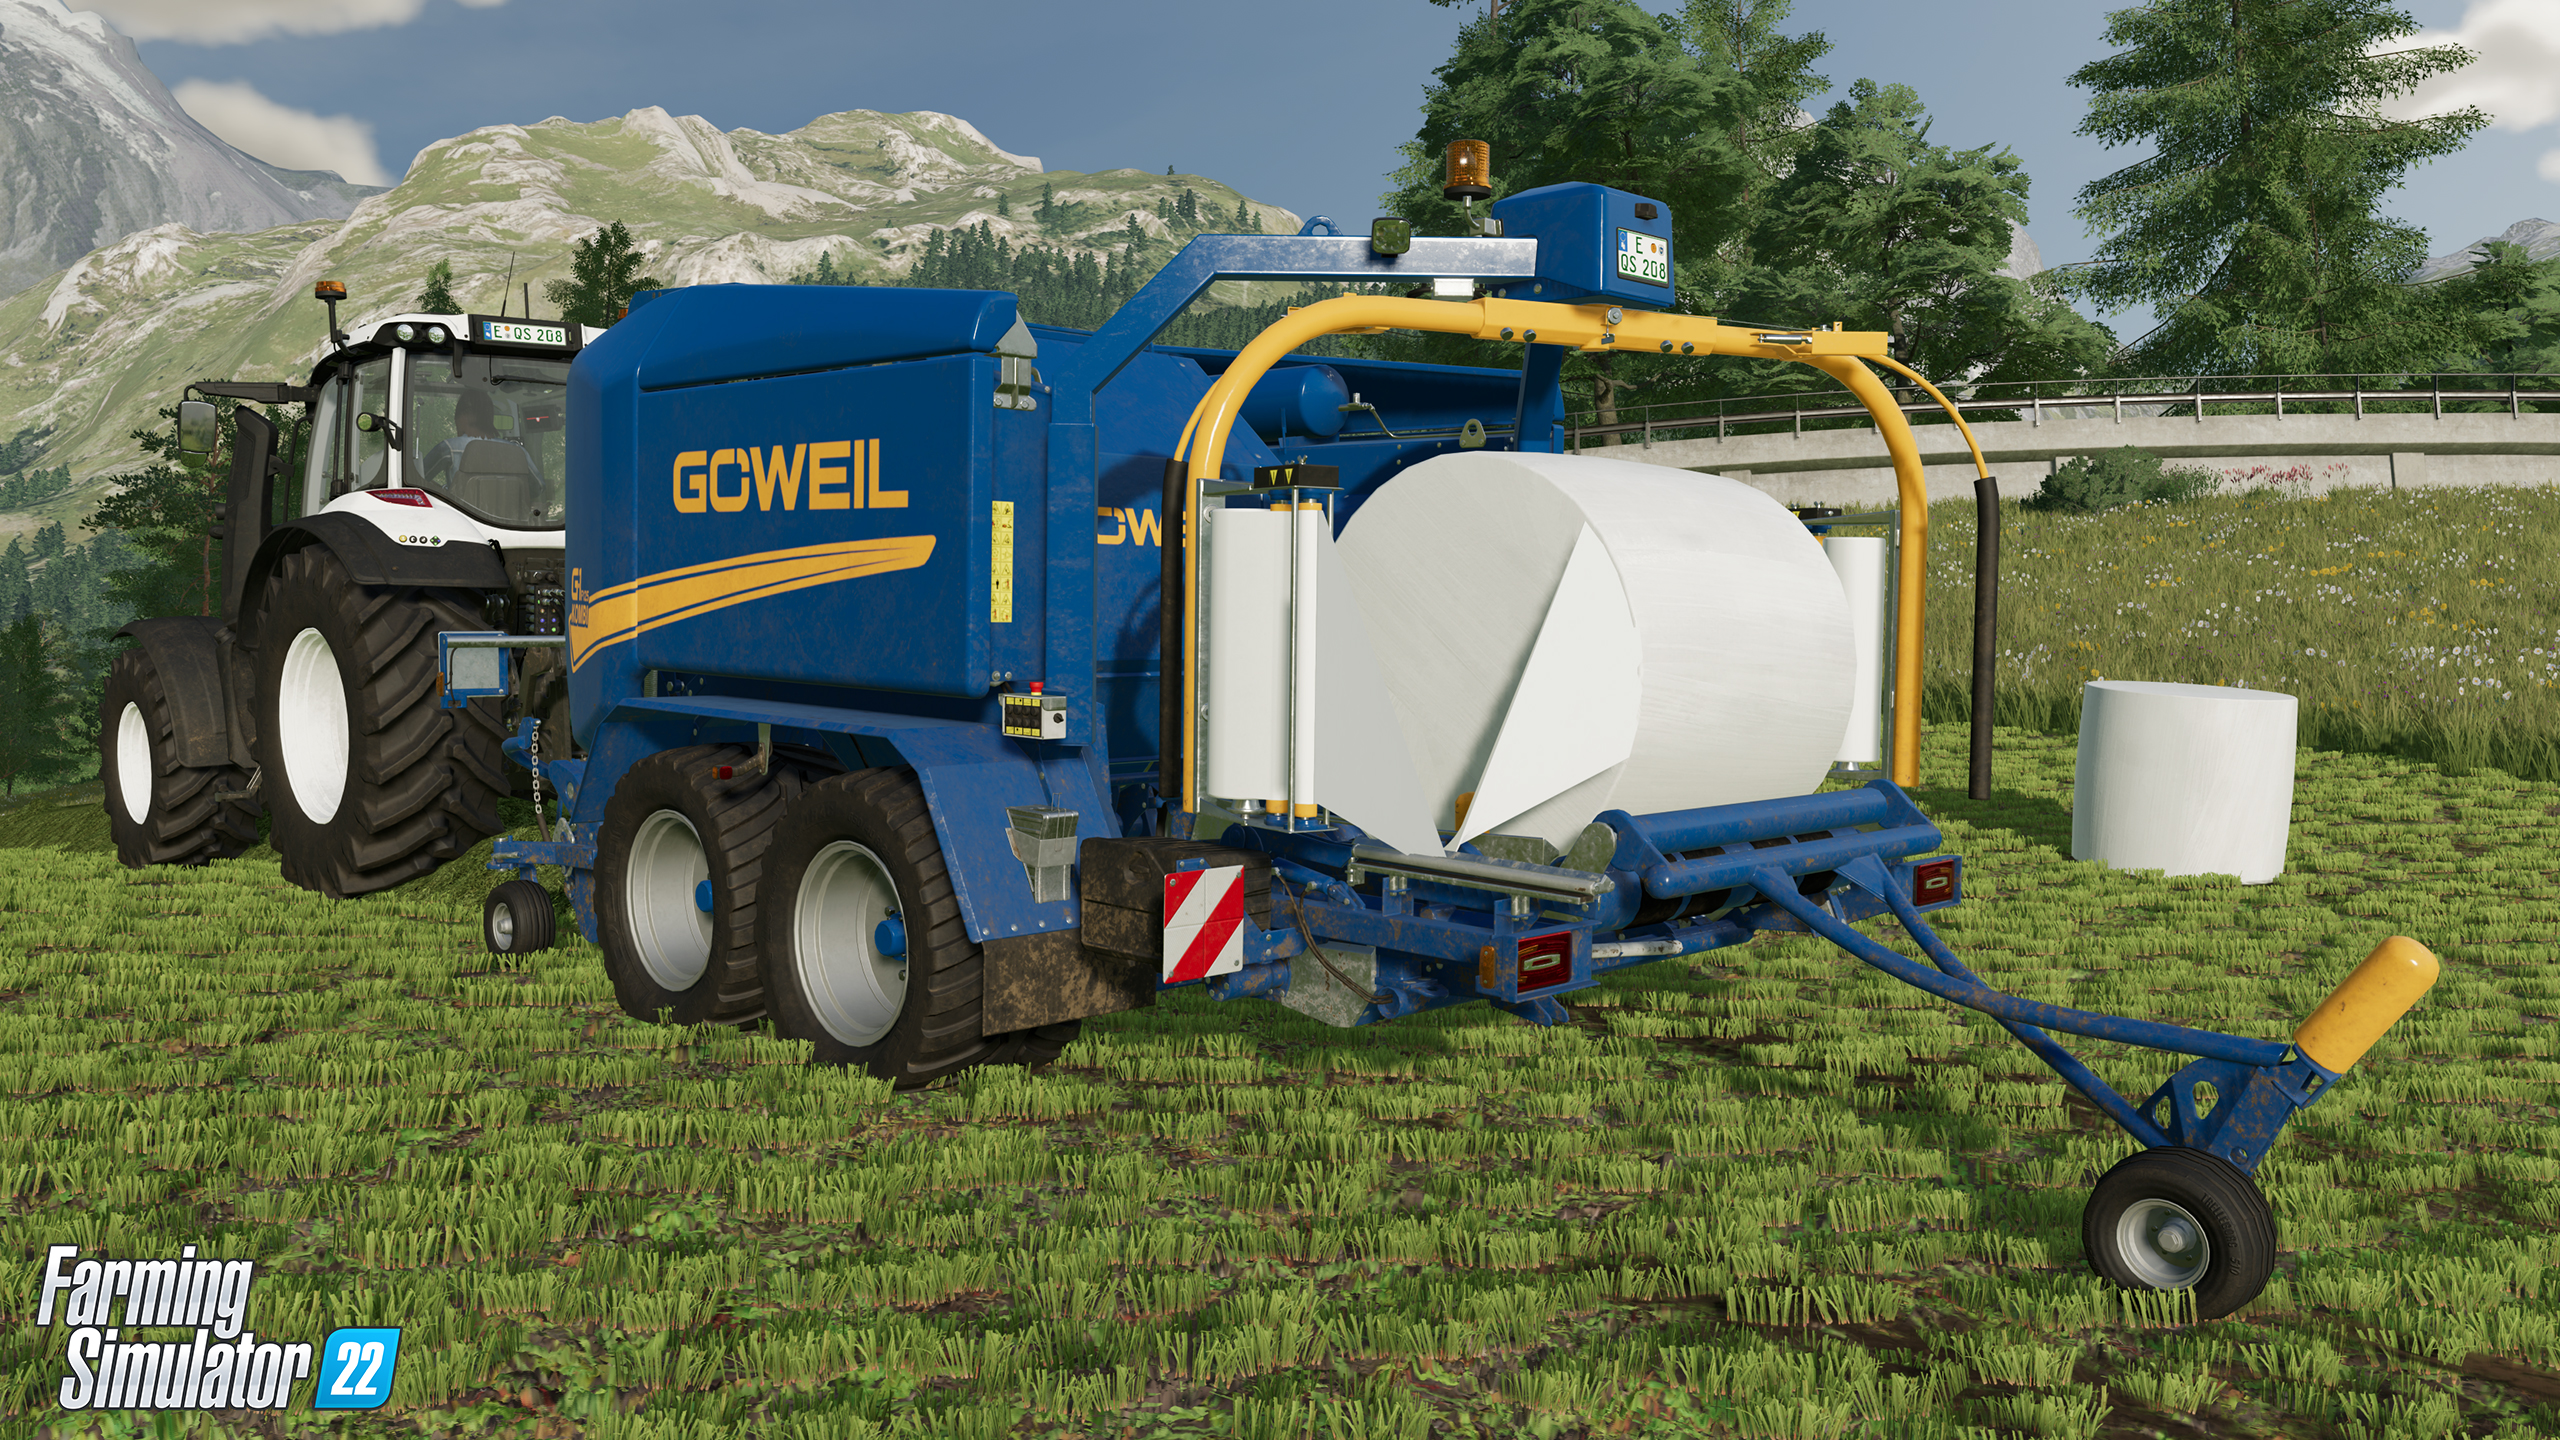 Göweil G-1 F125 Kombi (Farming Simulator 22) , g1 f125 kombi 